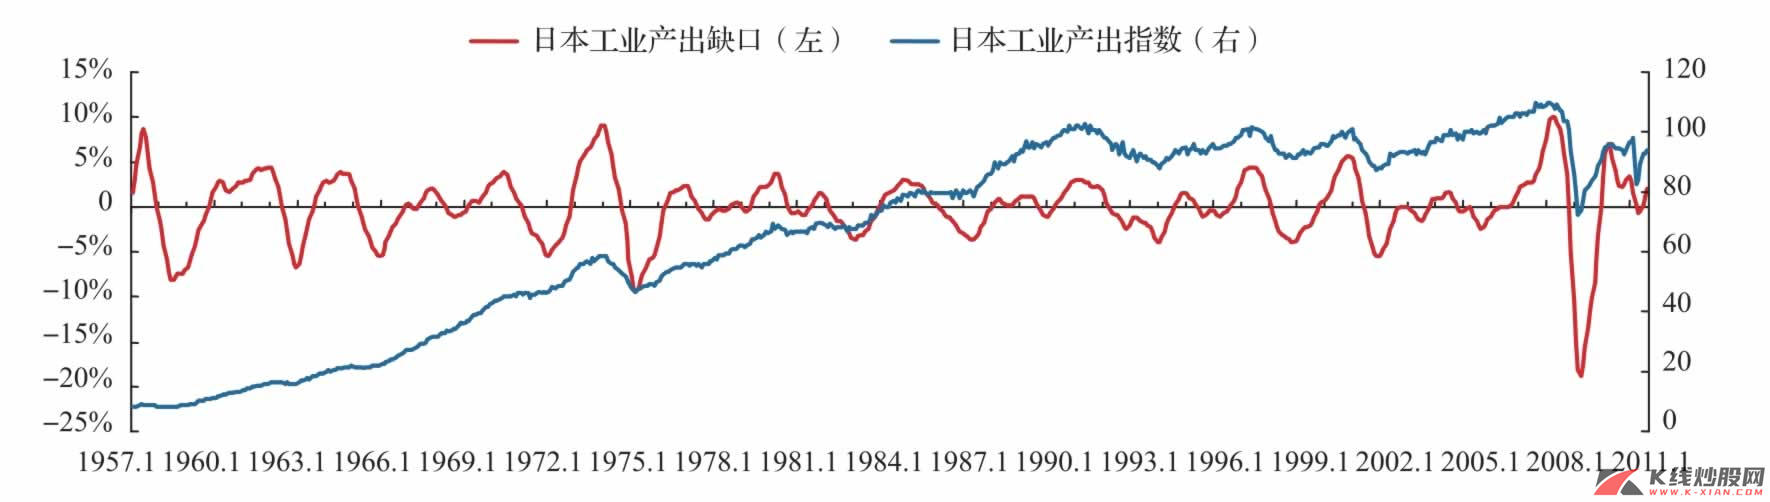 1957年以来日本经济周期